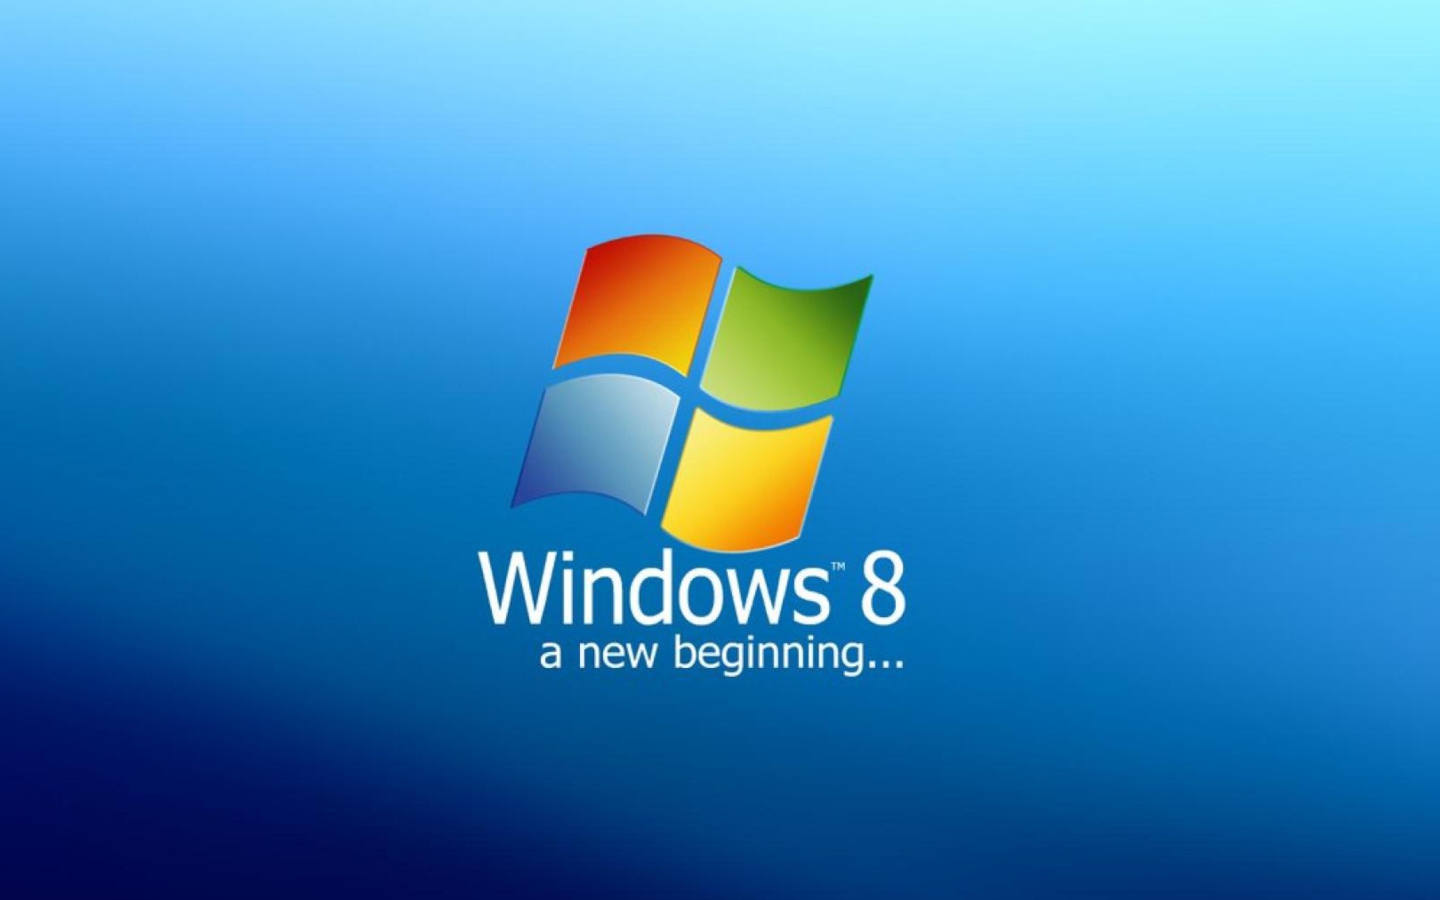 A New Beginning Windows 8 wallpaper 1440x900